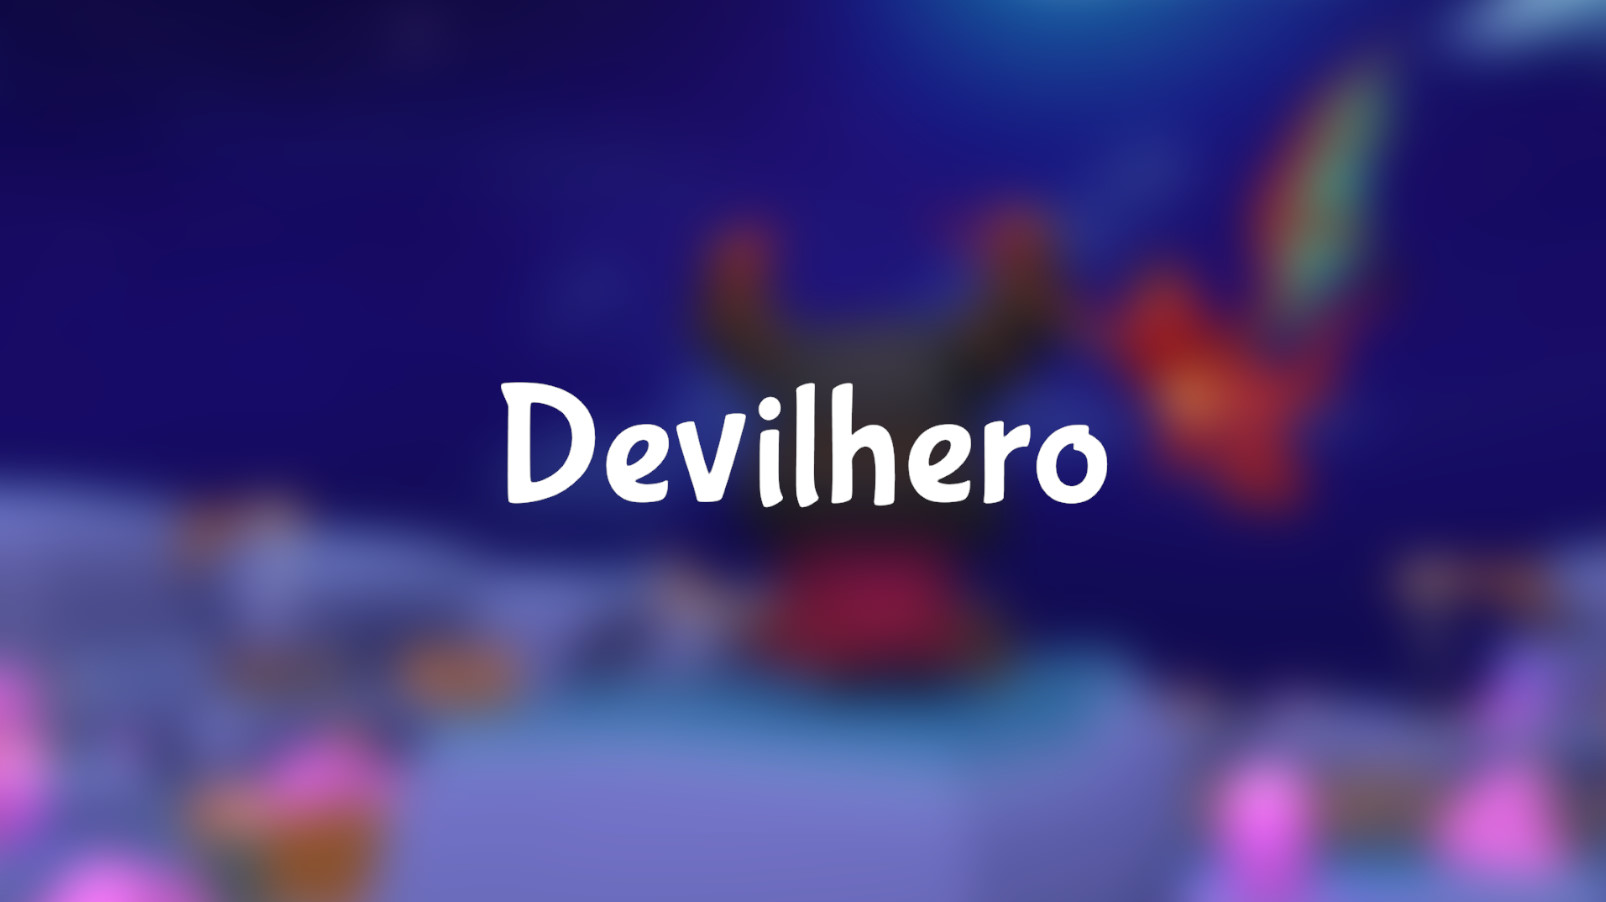 Devilhero